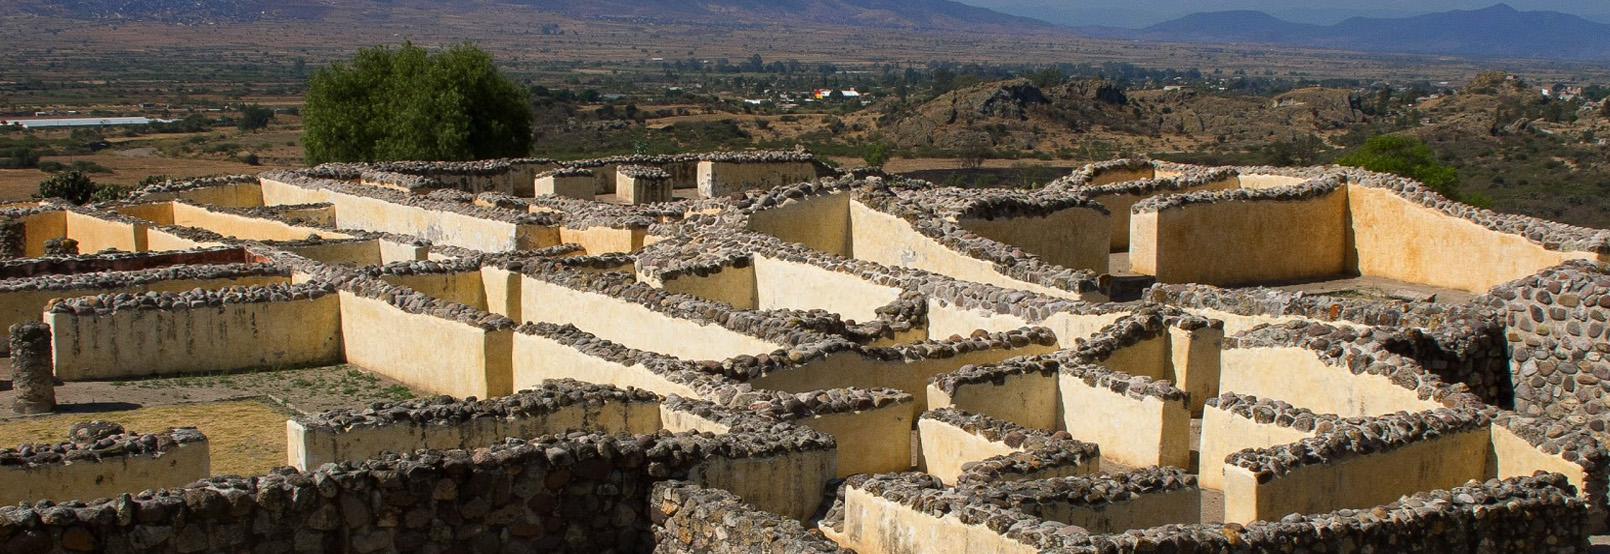 Arqueología Oaxaca 3